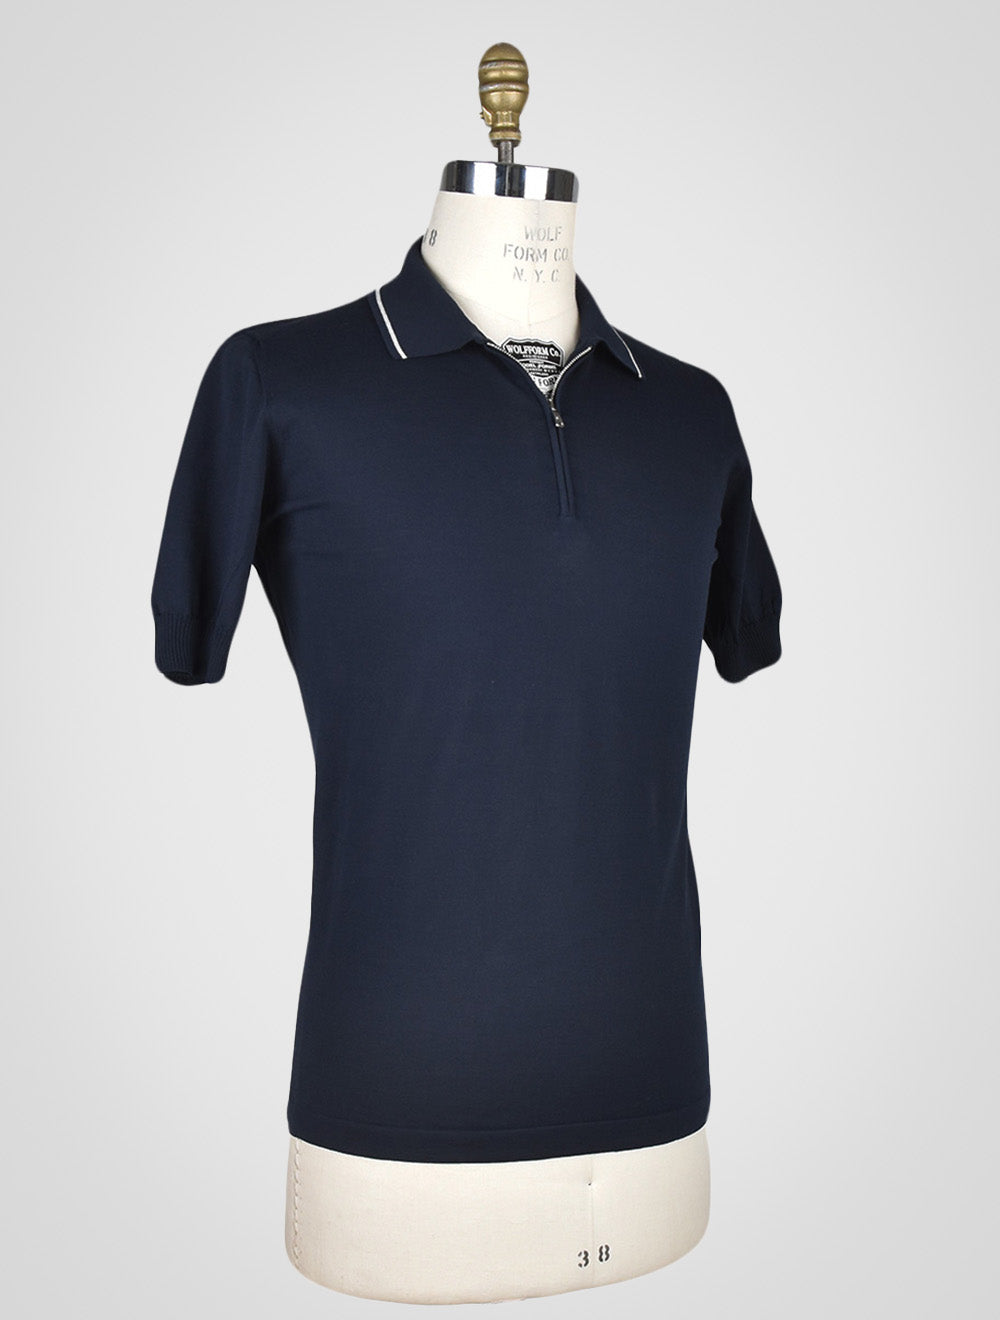 Хлопковая футболка-поло Fioroni синего цвета с молнией до половины